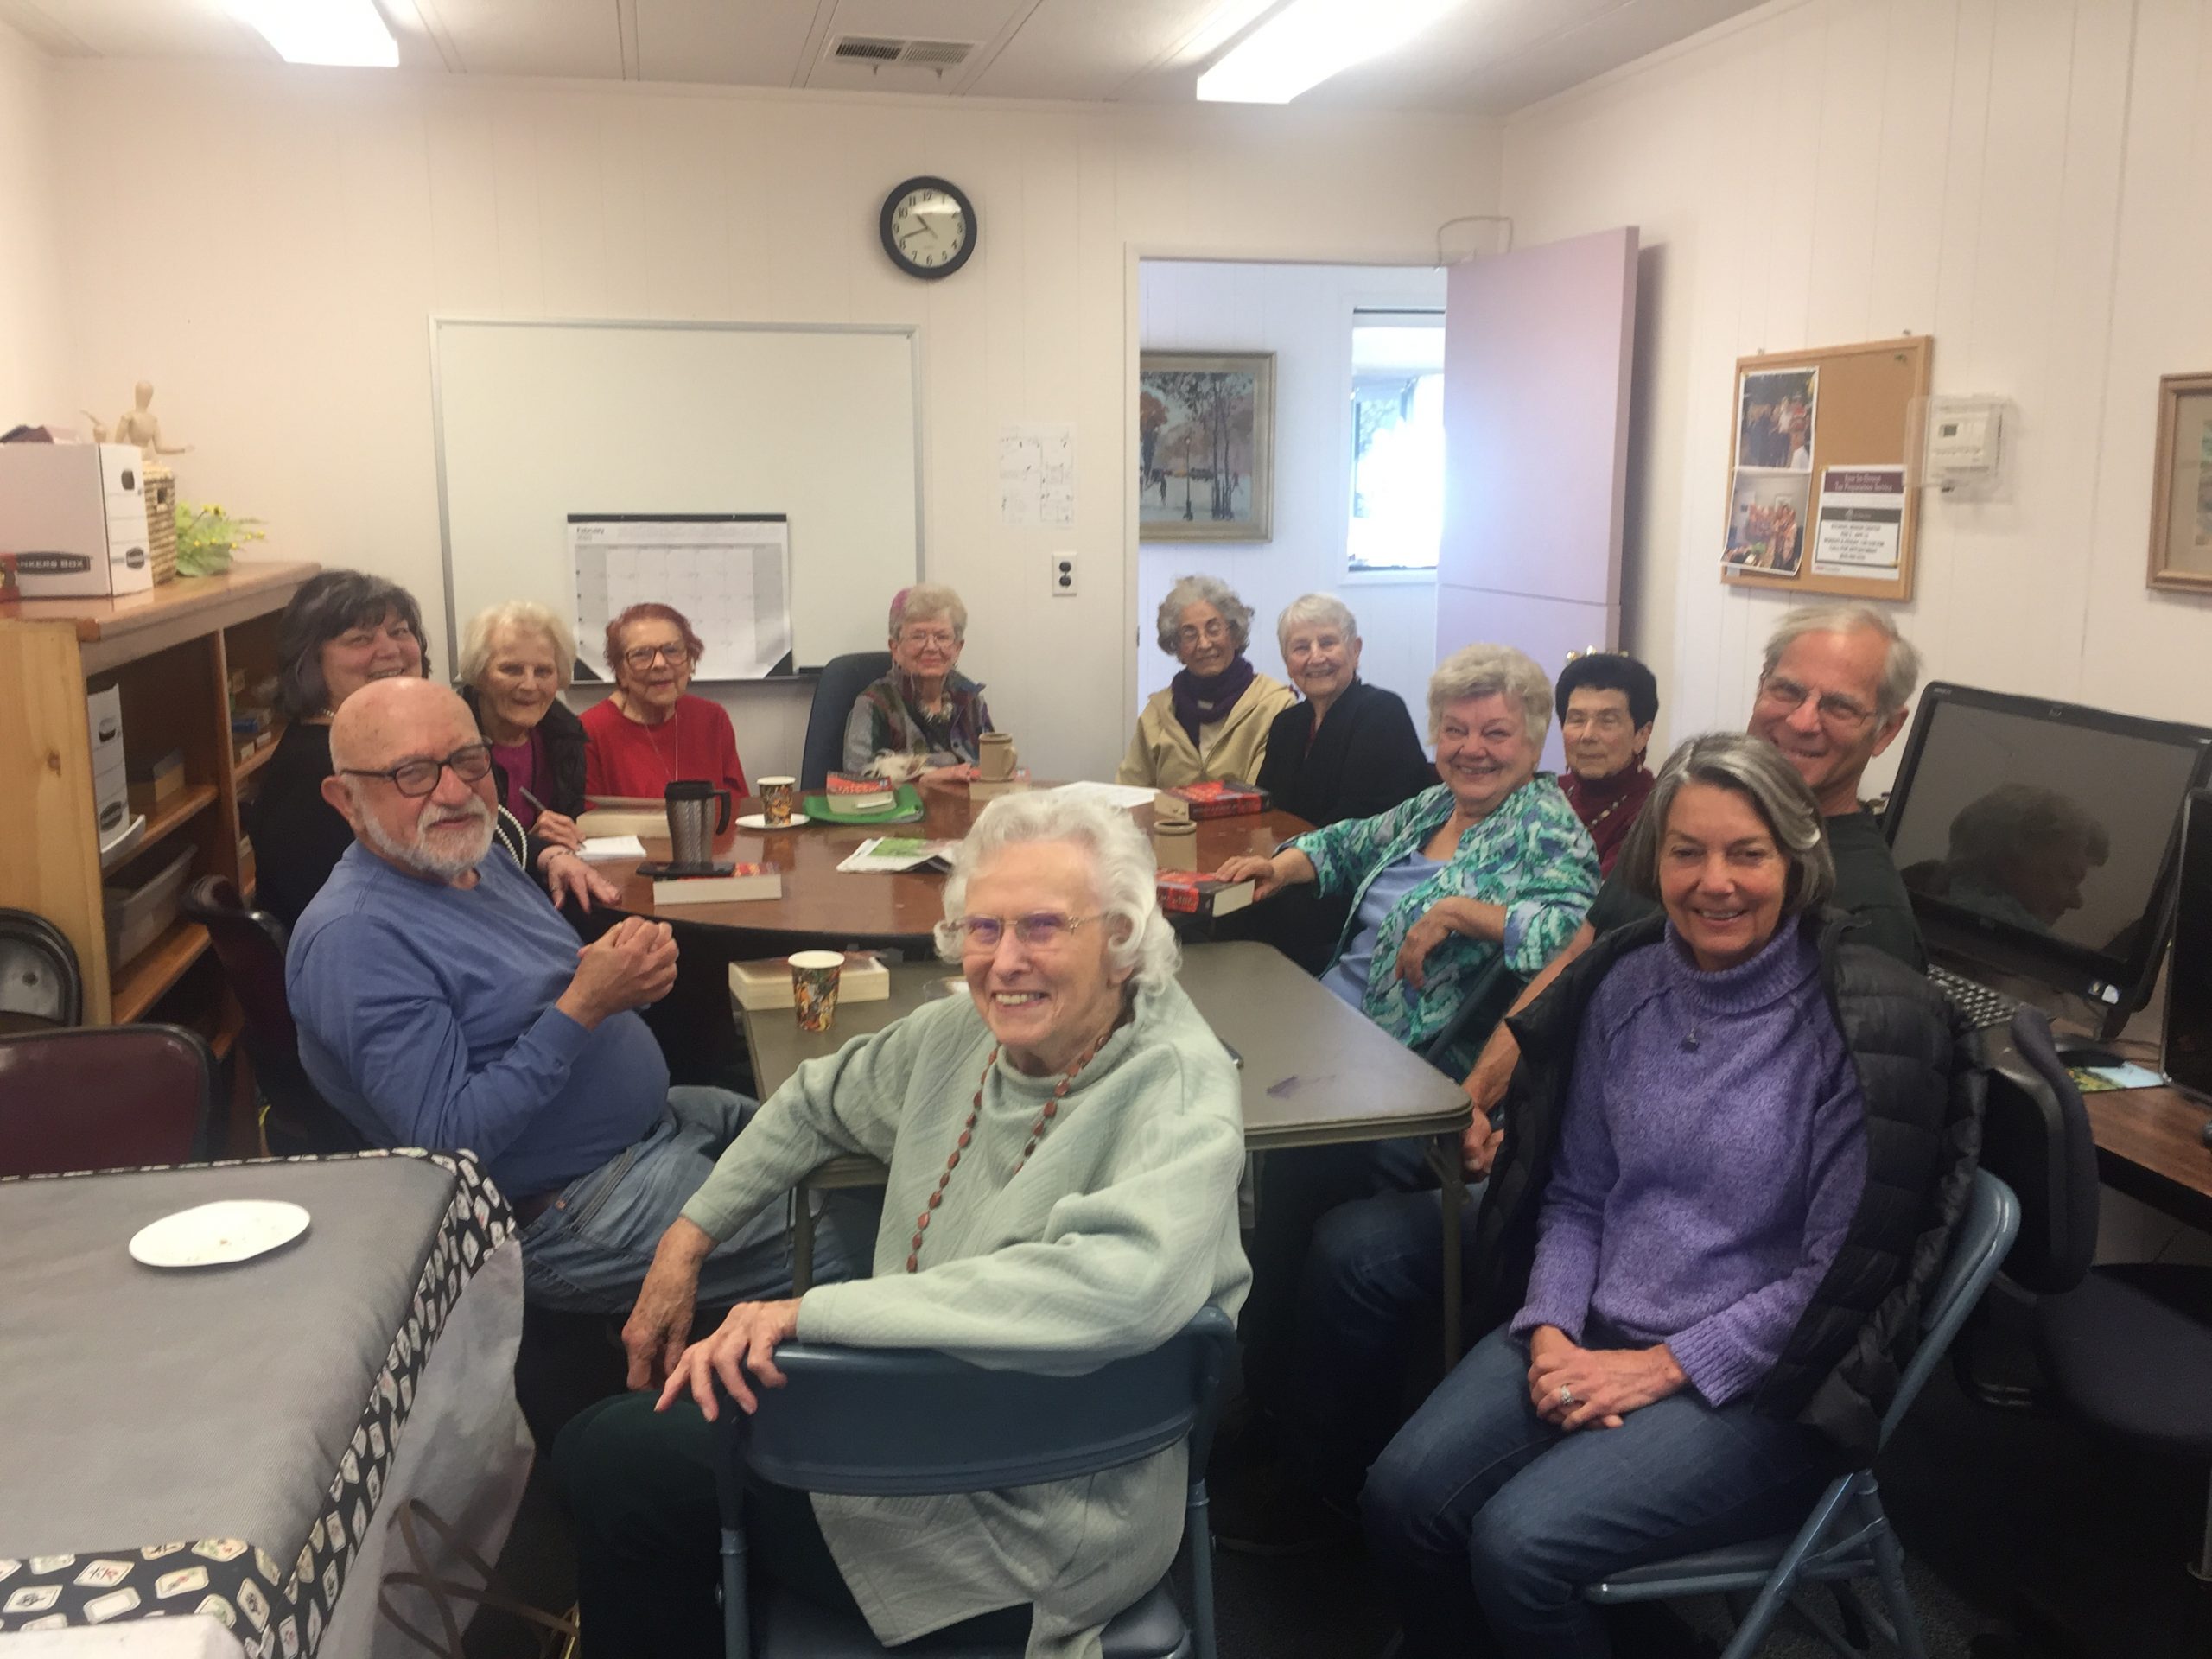 Santa Ynez Valley Foundation grants $100K to Solvang Senior Center